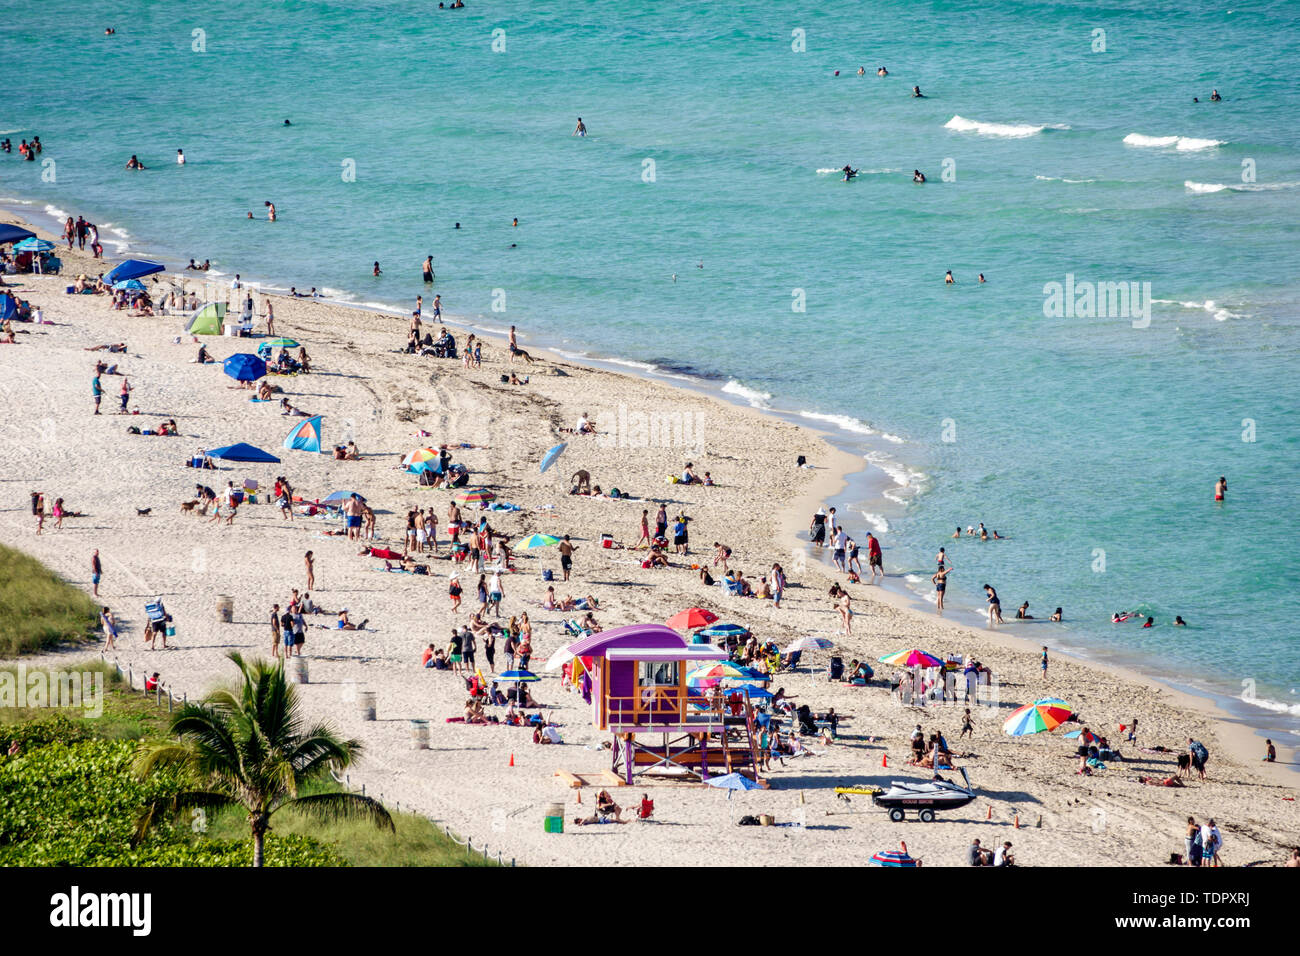 Miami Beach Florida, North Beach, North Shore Open Space Park, océan Atlantique, bains de soleil, plage publique, sable, parasols, rivage, station tour de maître-nageur, cr Banque D'Images